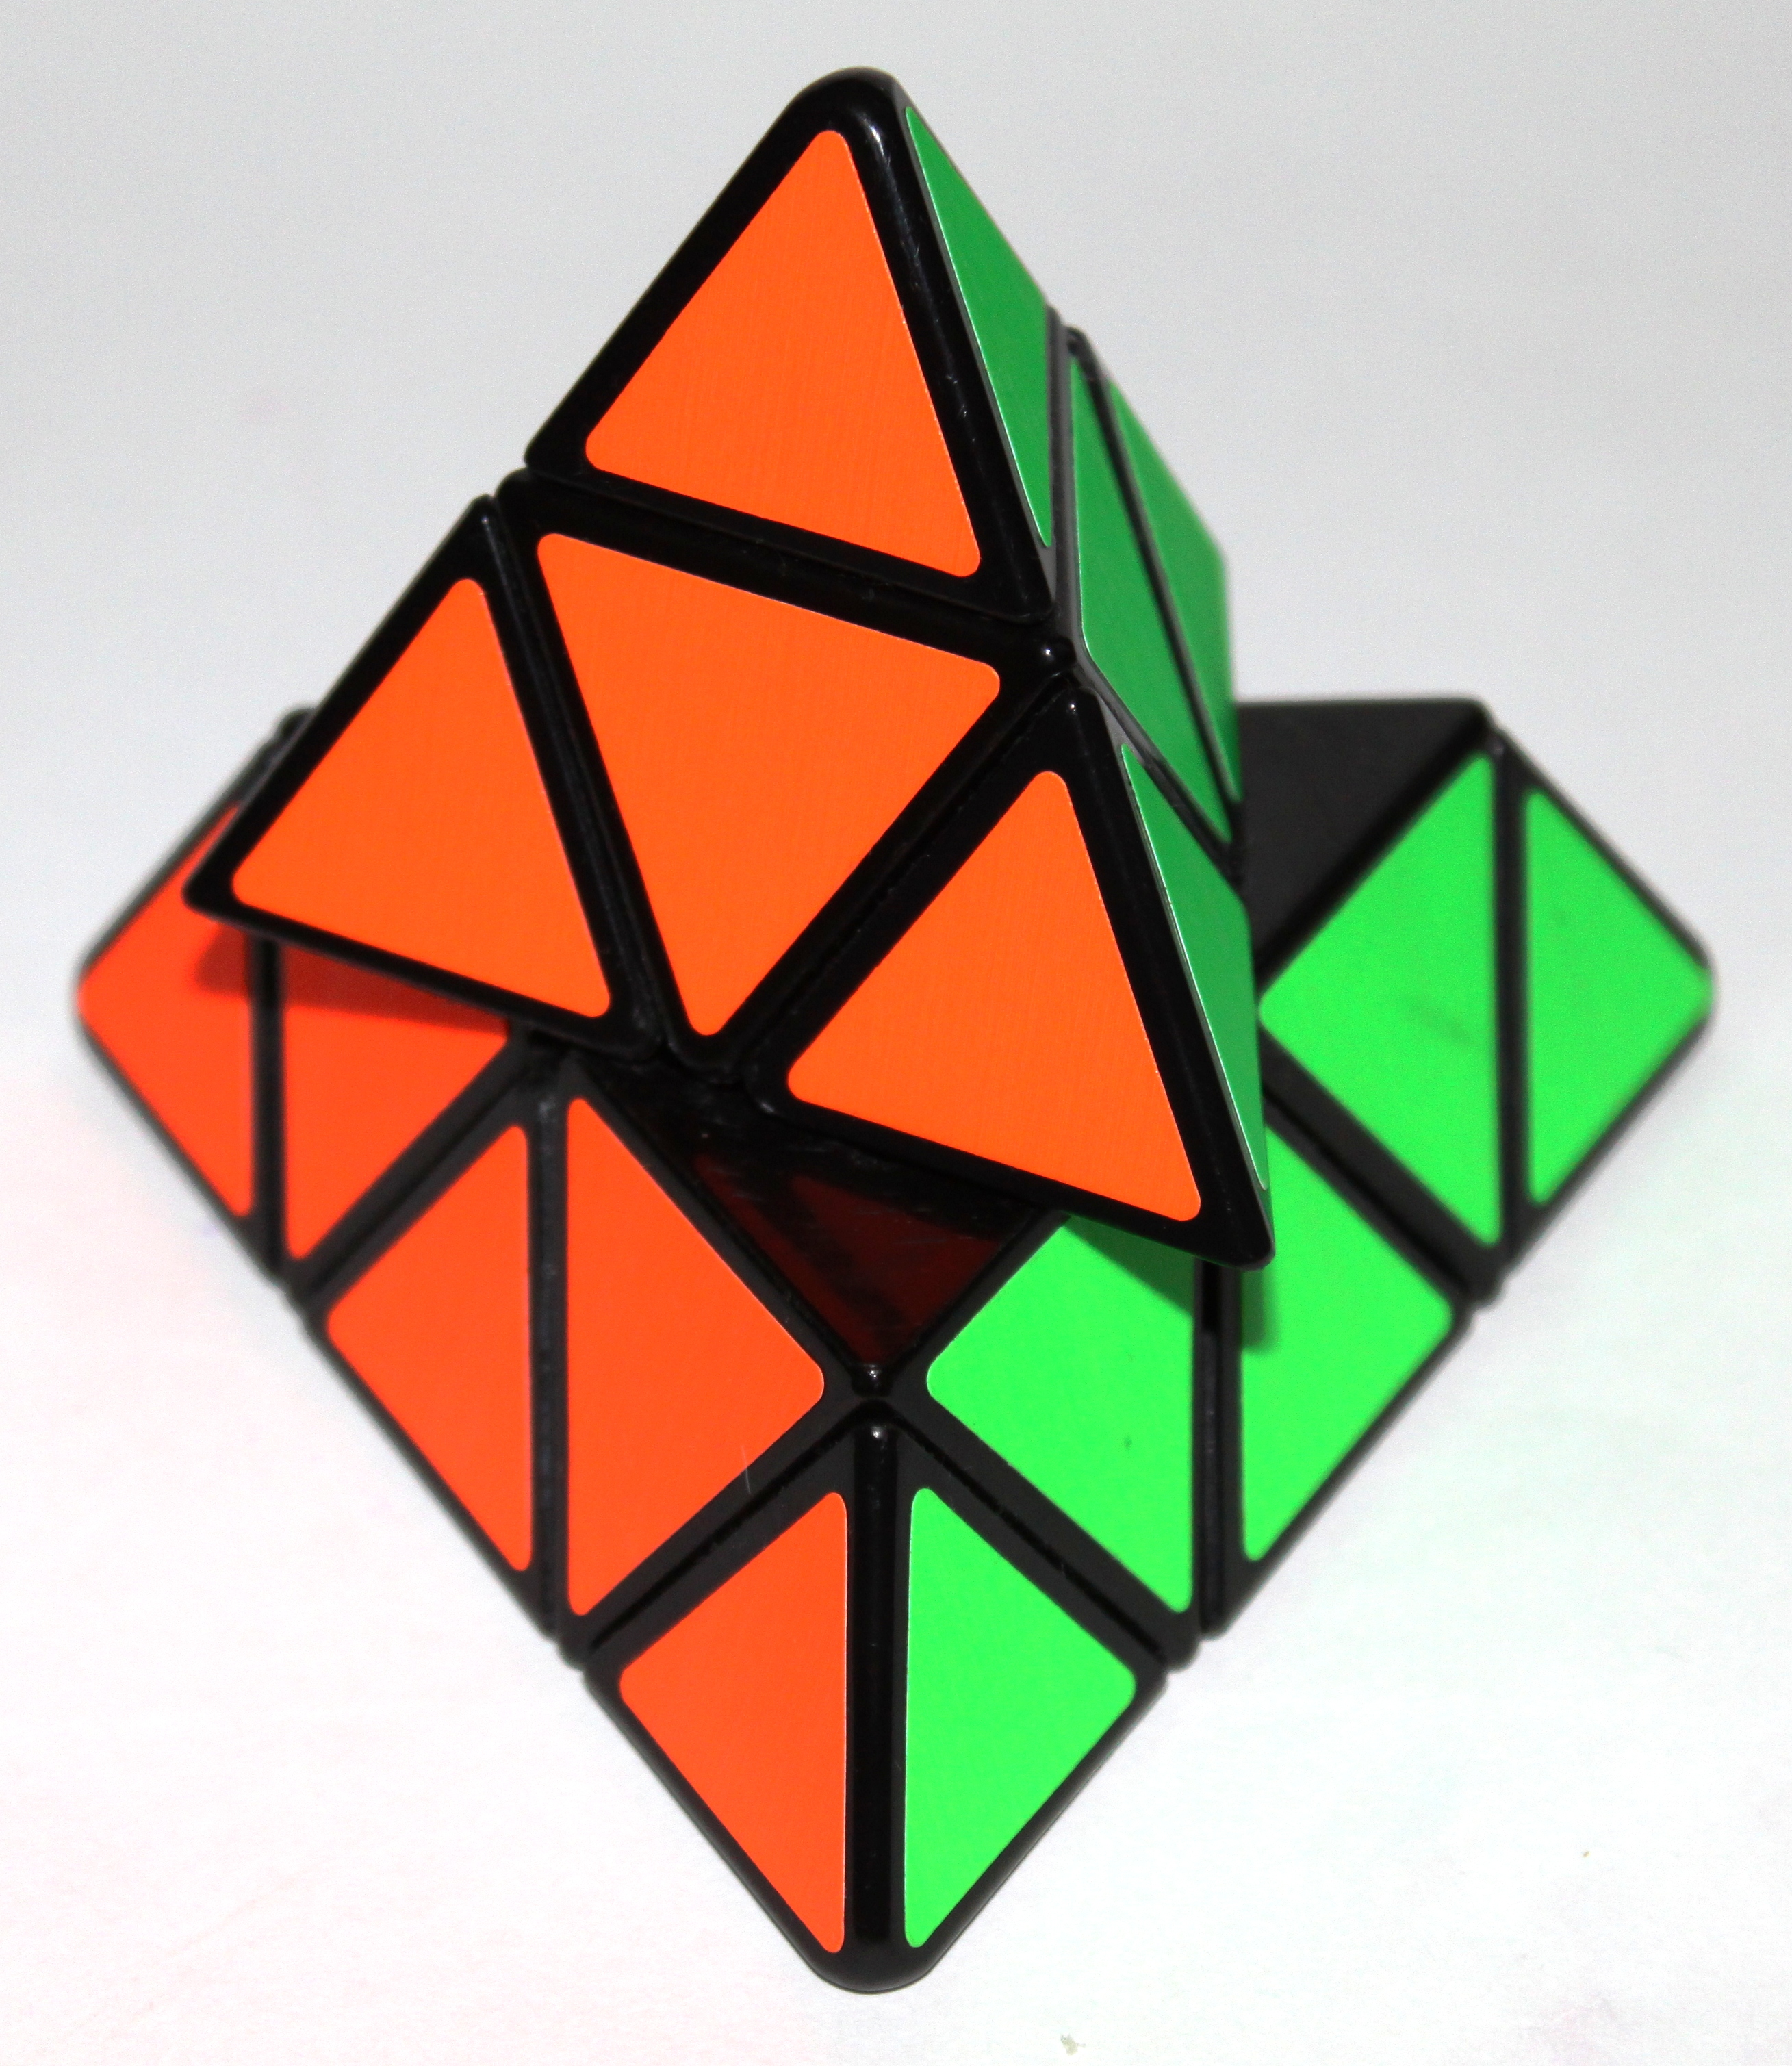 Atypická Rubikova kostka (Pyraminx) ve tvaru pravidelného trojbokého jehlanu (čtyřstěnu)